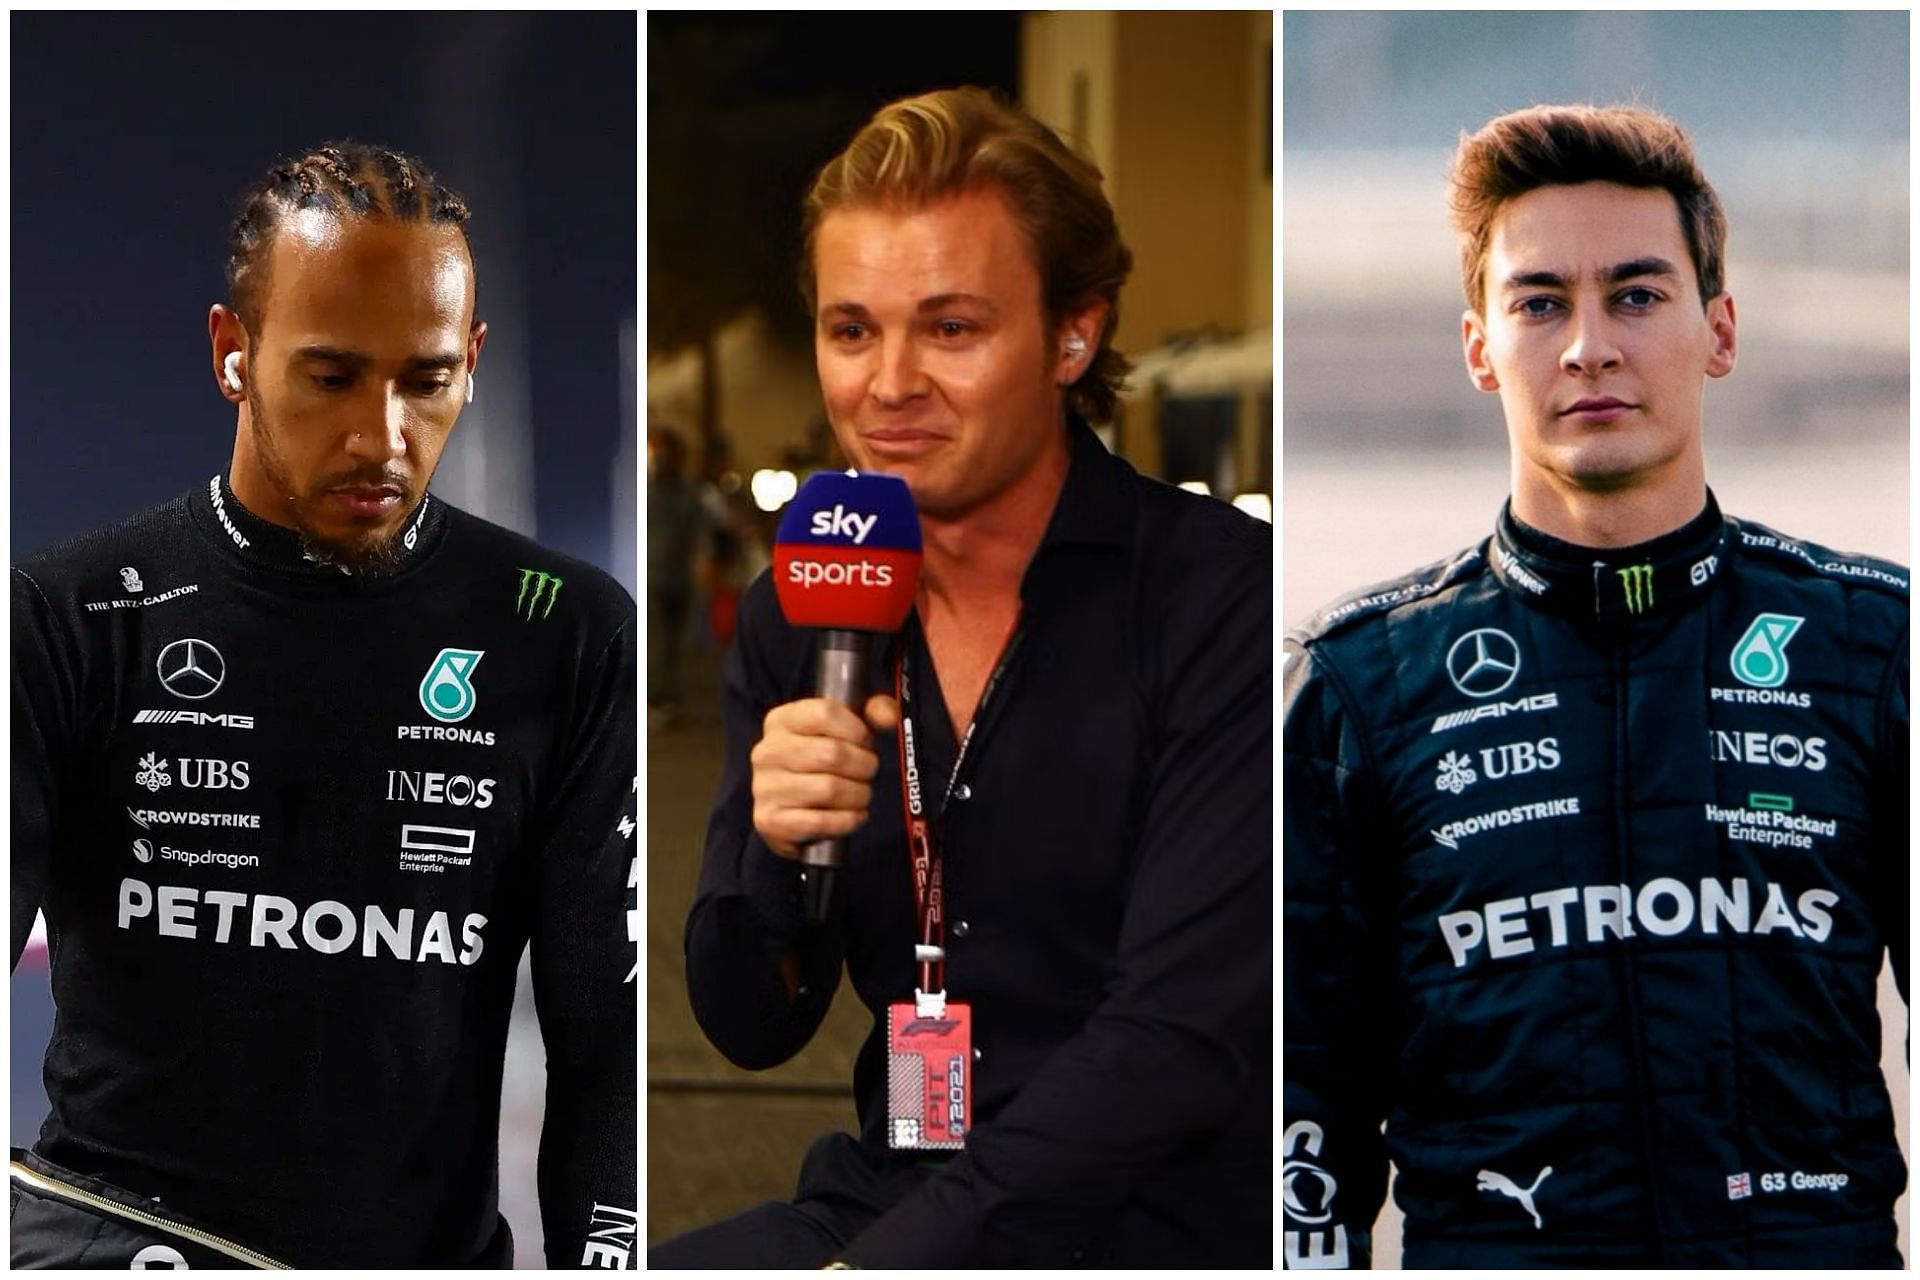 Lewis Hamilton (L), Nico Rosberg (C) and George Russell (R) (Collage via Sportskeeda)